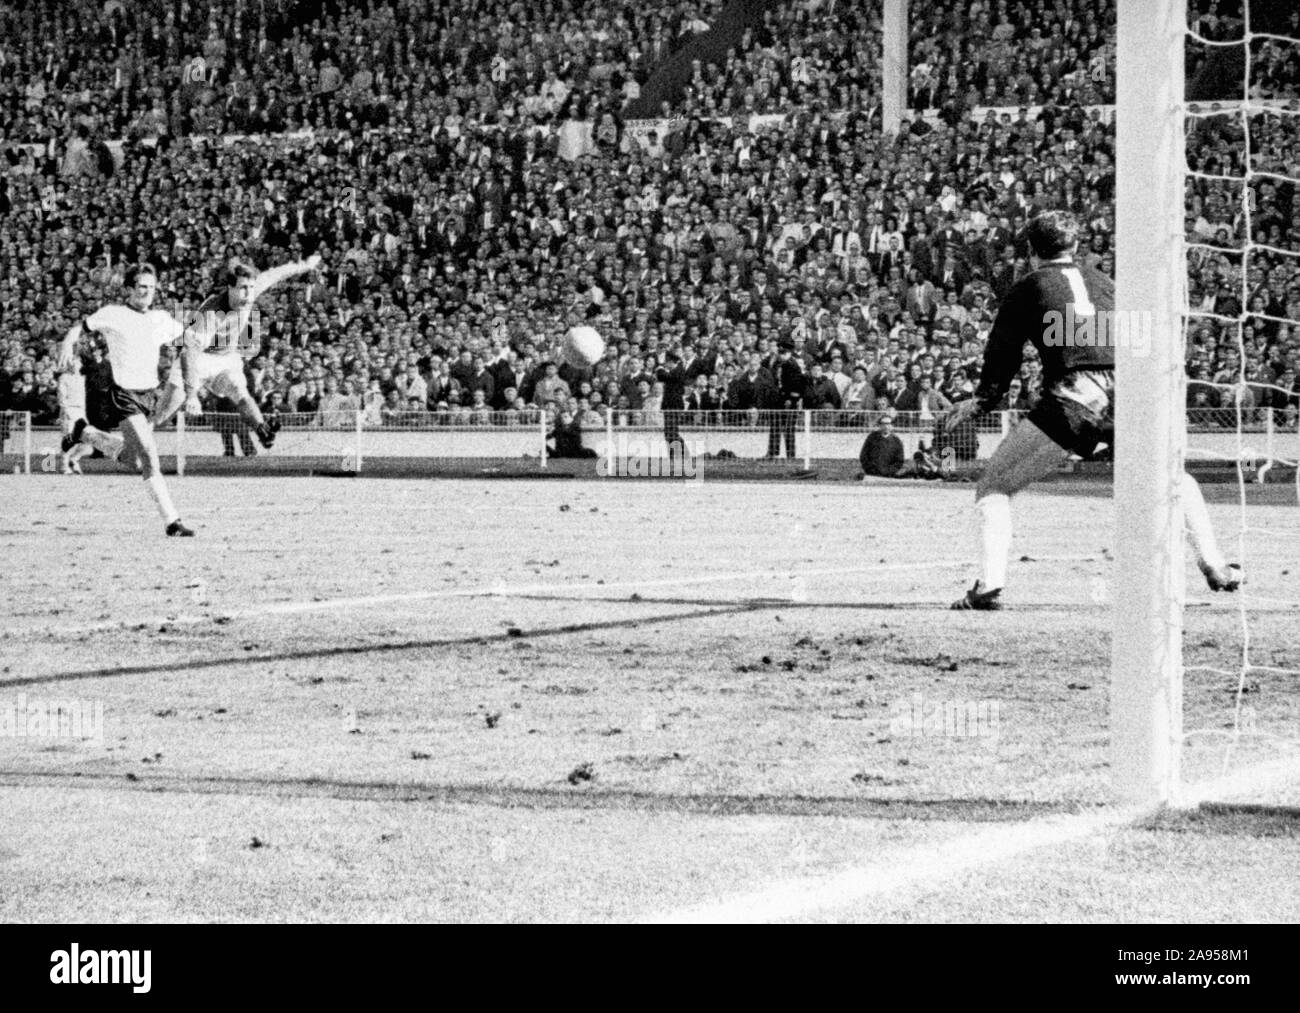 Foto vom 30.07.1966 Englands Geoff Hurst Risse einen Schuss deutschen Torhüter Hans Tilkowski, das letzte Tor der Welt-Cup-Finale gegen die Bundesrepublik Deutschland im Wembley-Stadion. Stockfoto